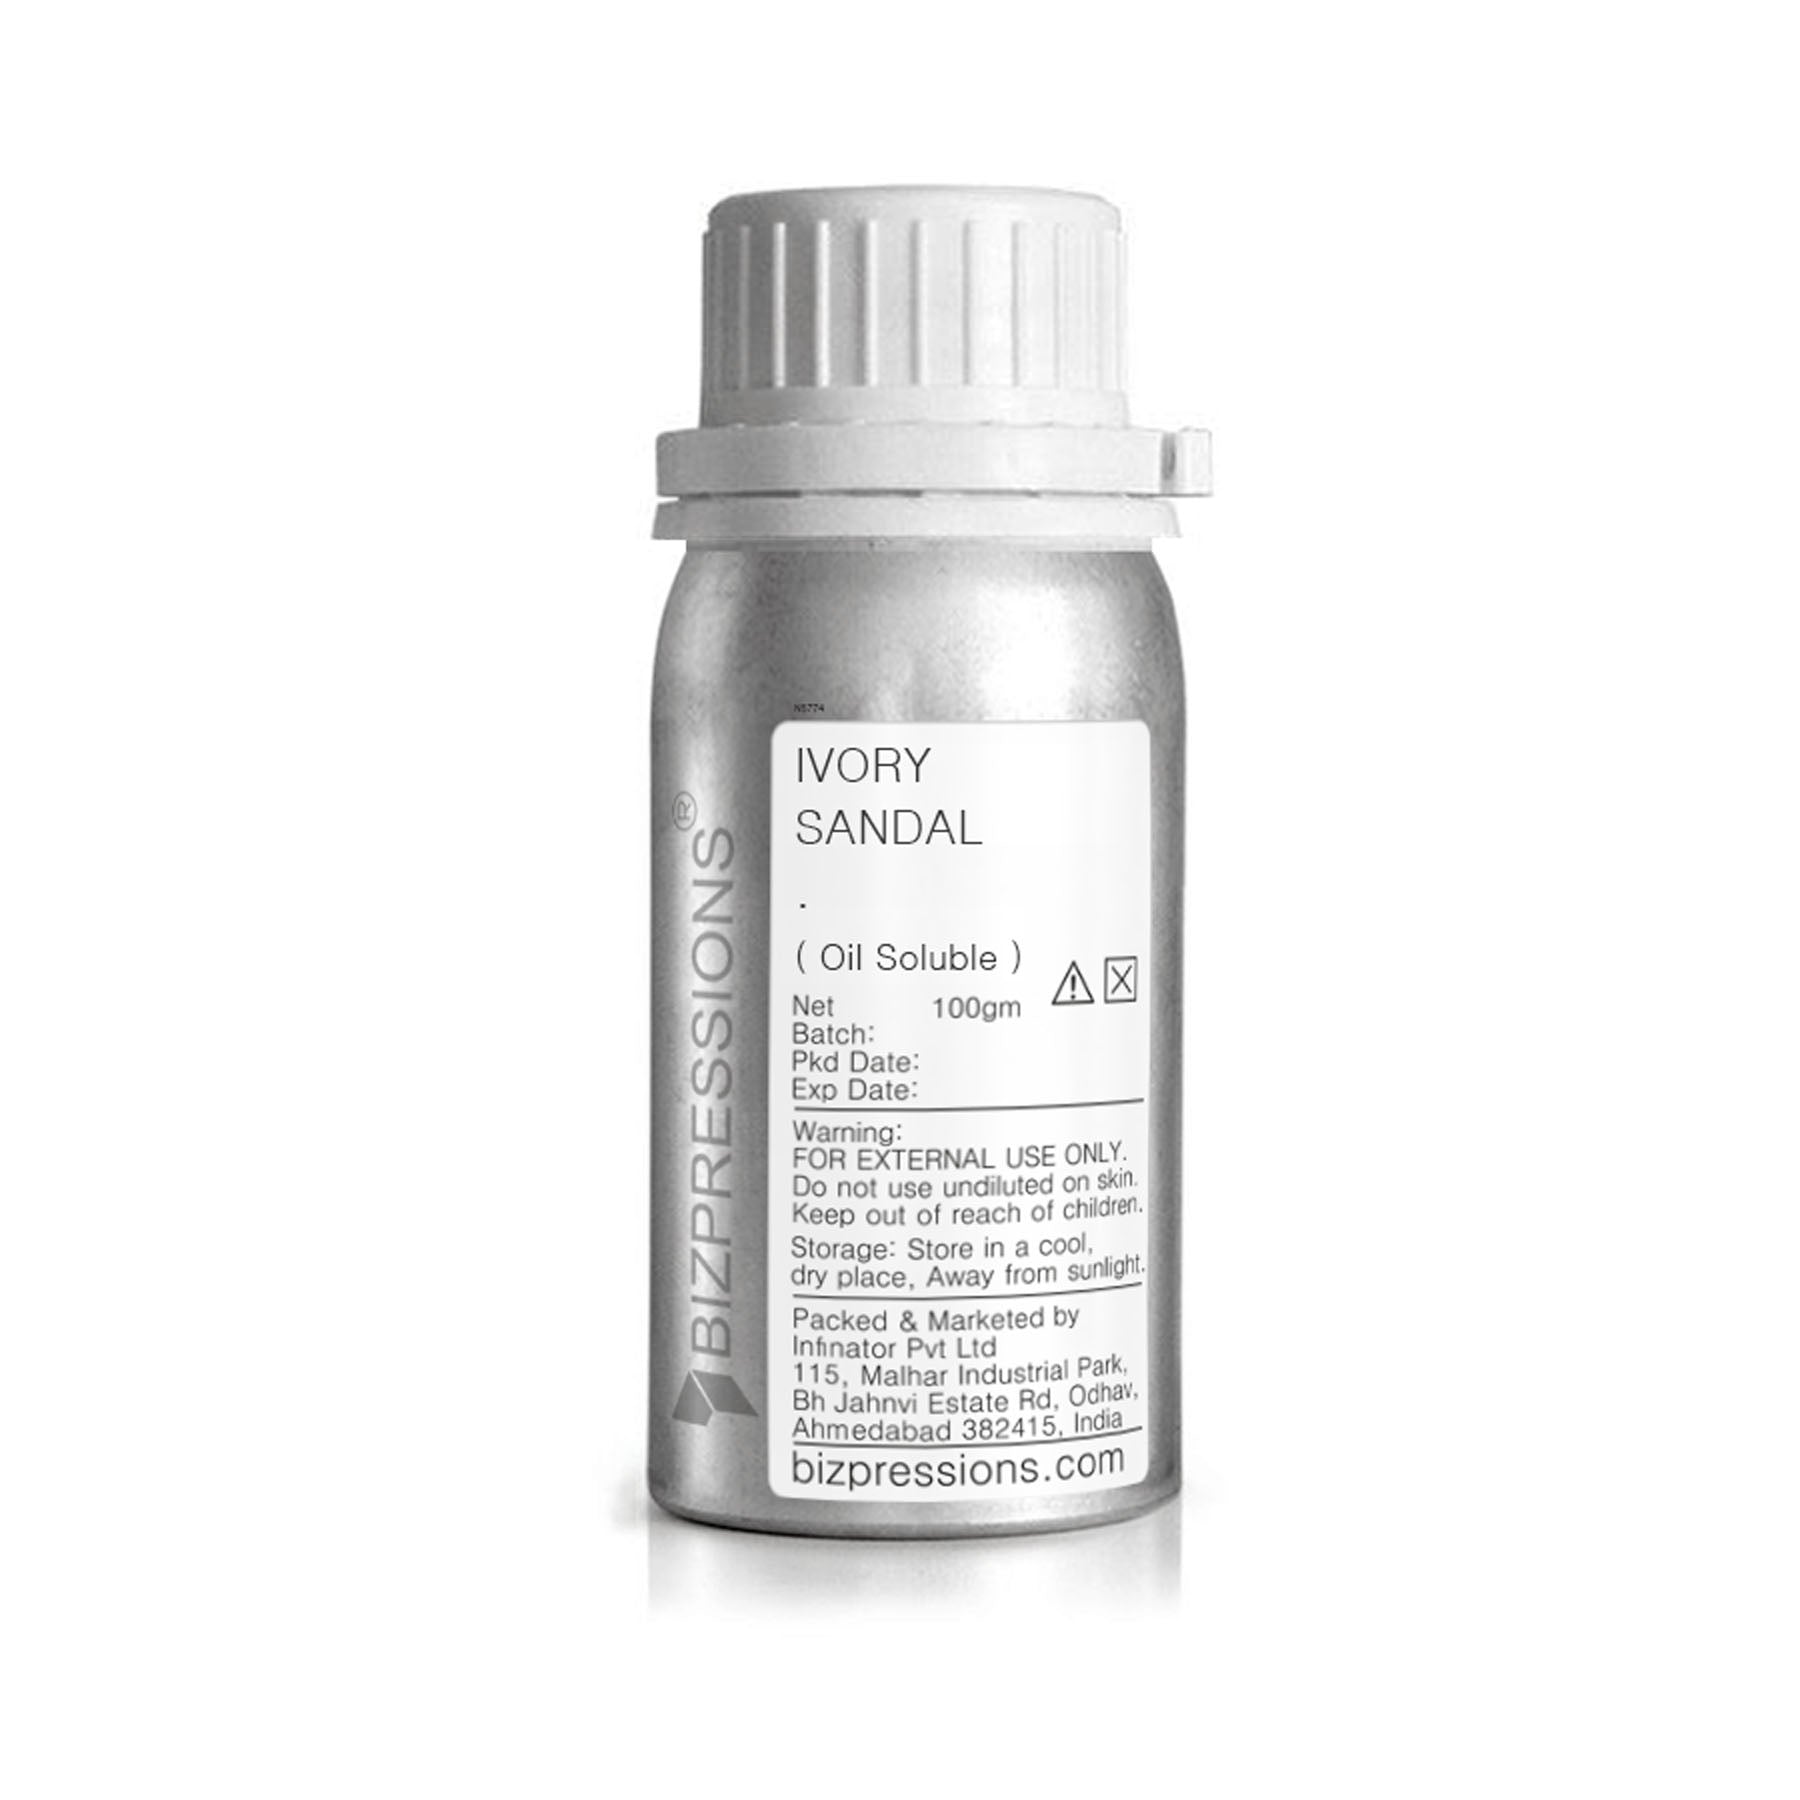 IVORY SANDAL - Fragrance ( Oil Soluble ) - 100 gm